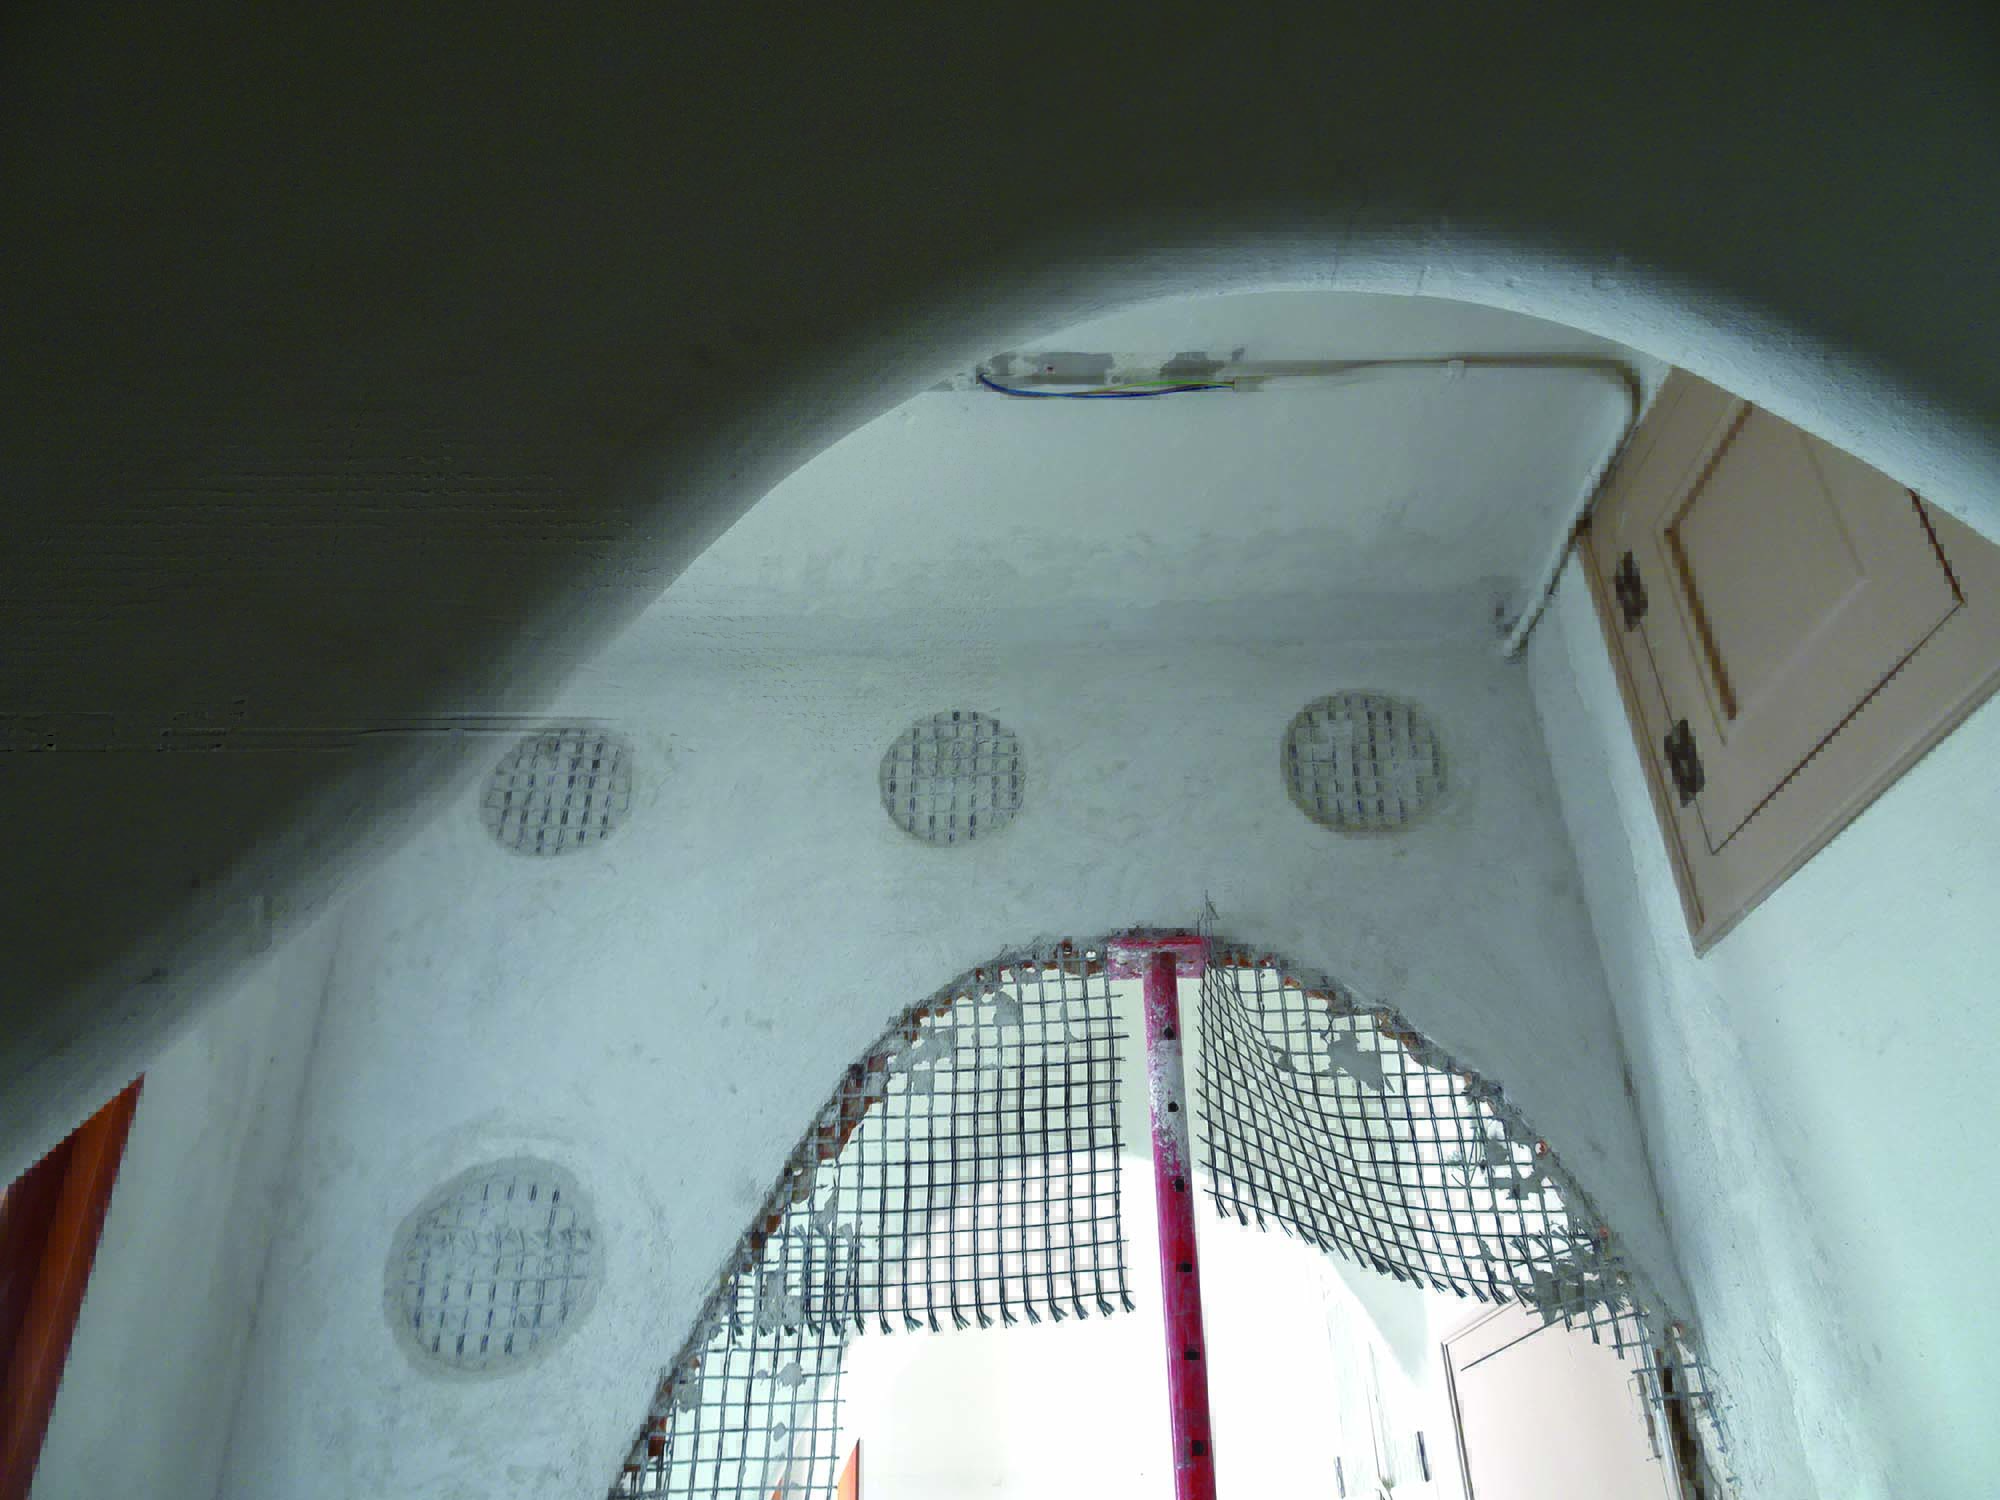 Casa Batlló - Gaudì_Interventi di rinforzo strutturale e restauro con i sistemi Mapei (2)